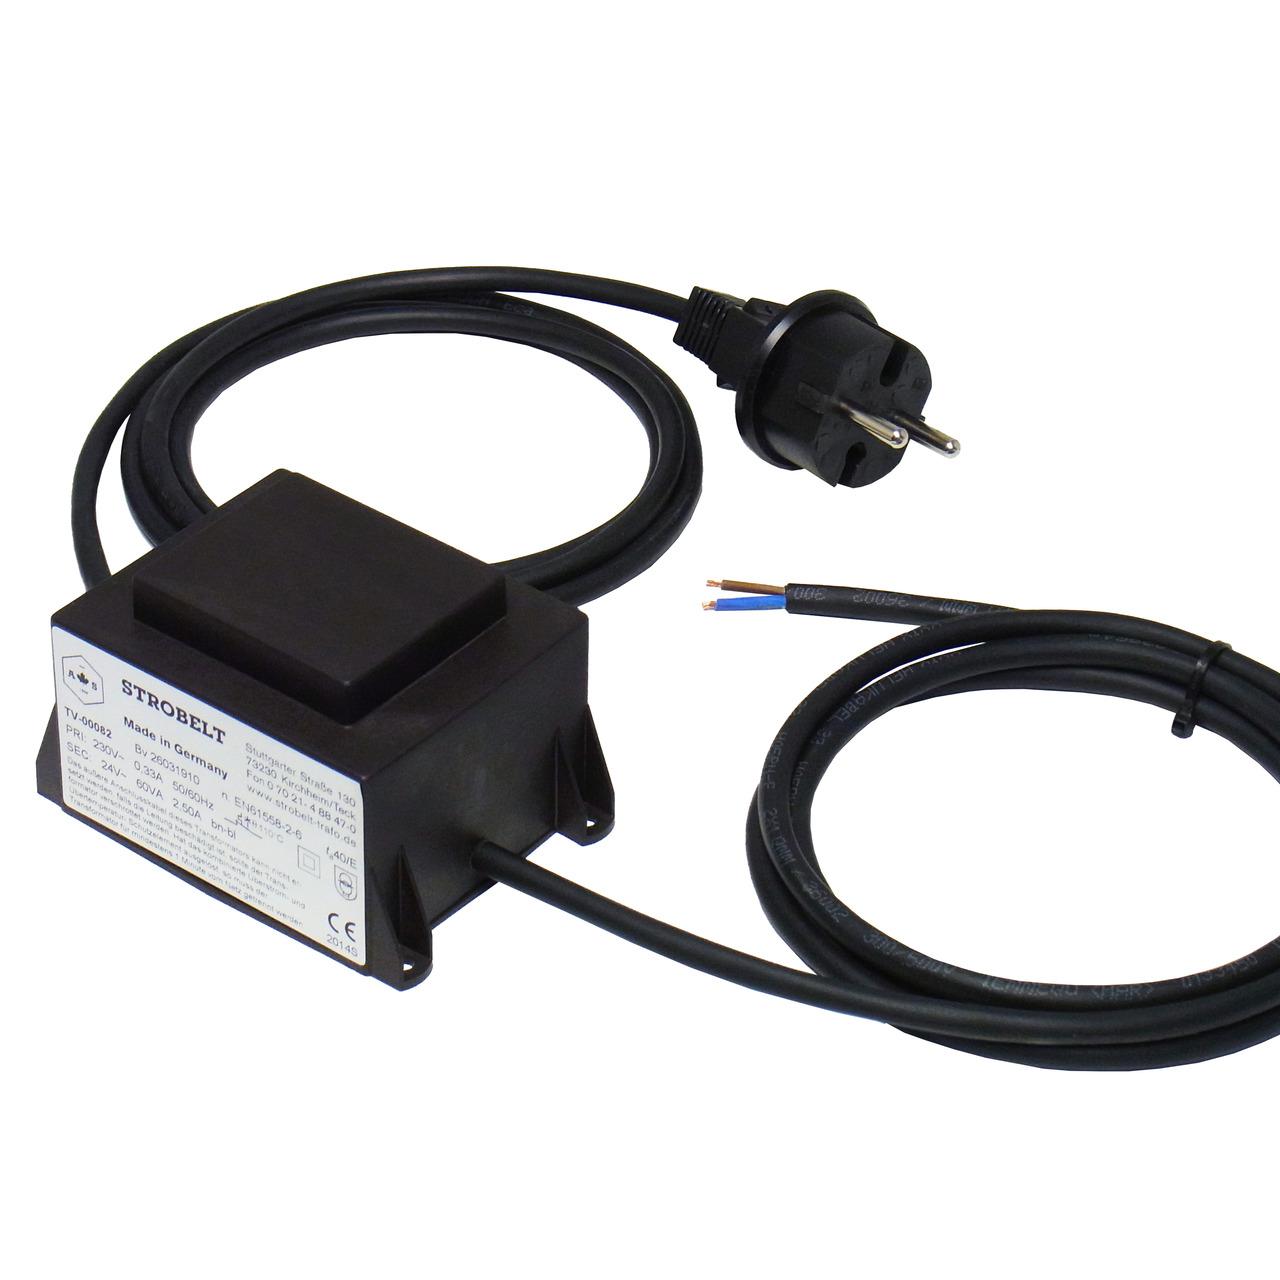 Strobelt Sicherheitstransformator 60 VA- 230V- 50-60 Hz- SEC 24V AC- vergossen in Gehäuse- IP44